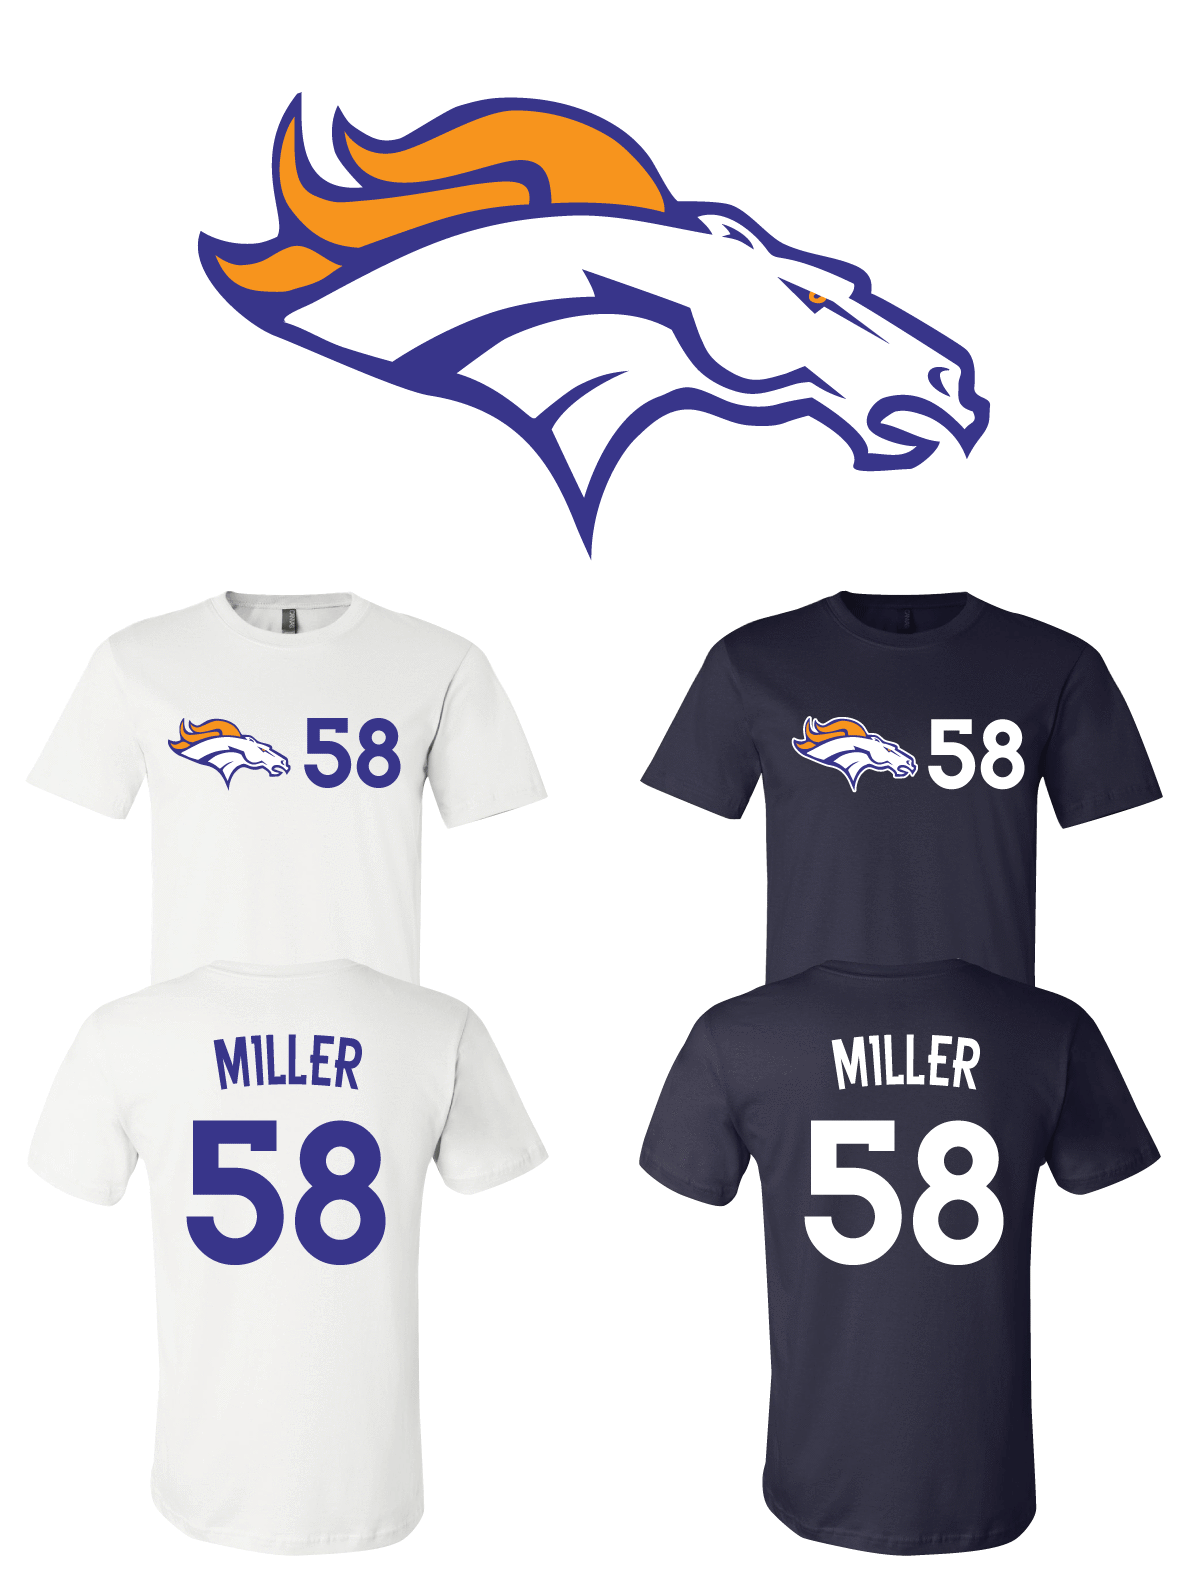 Von Miller #58 Denver Broncos Jersey player shirt